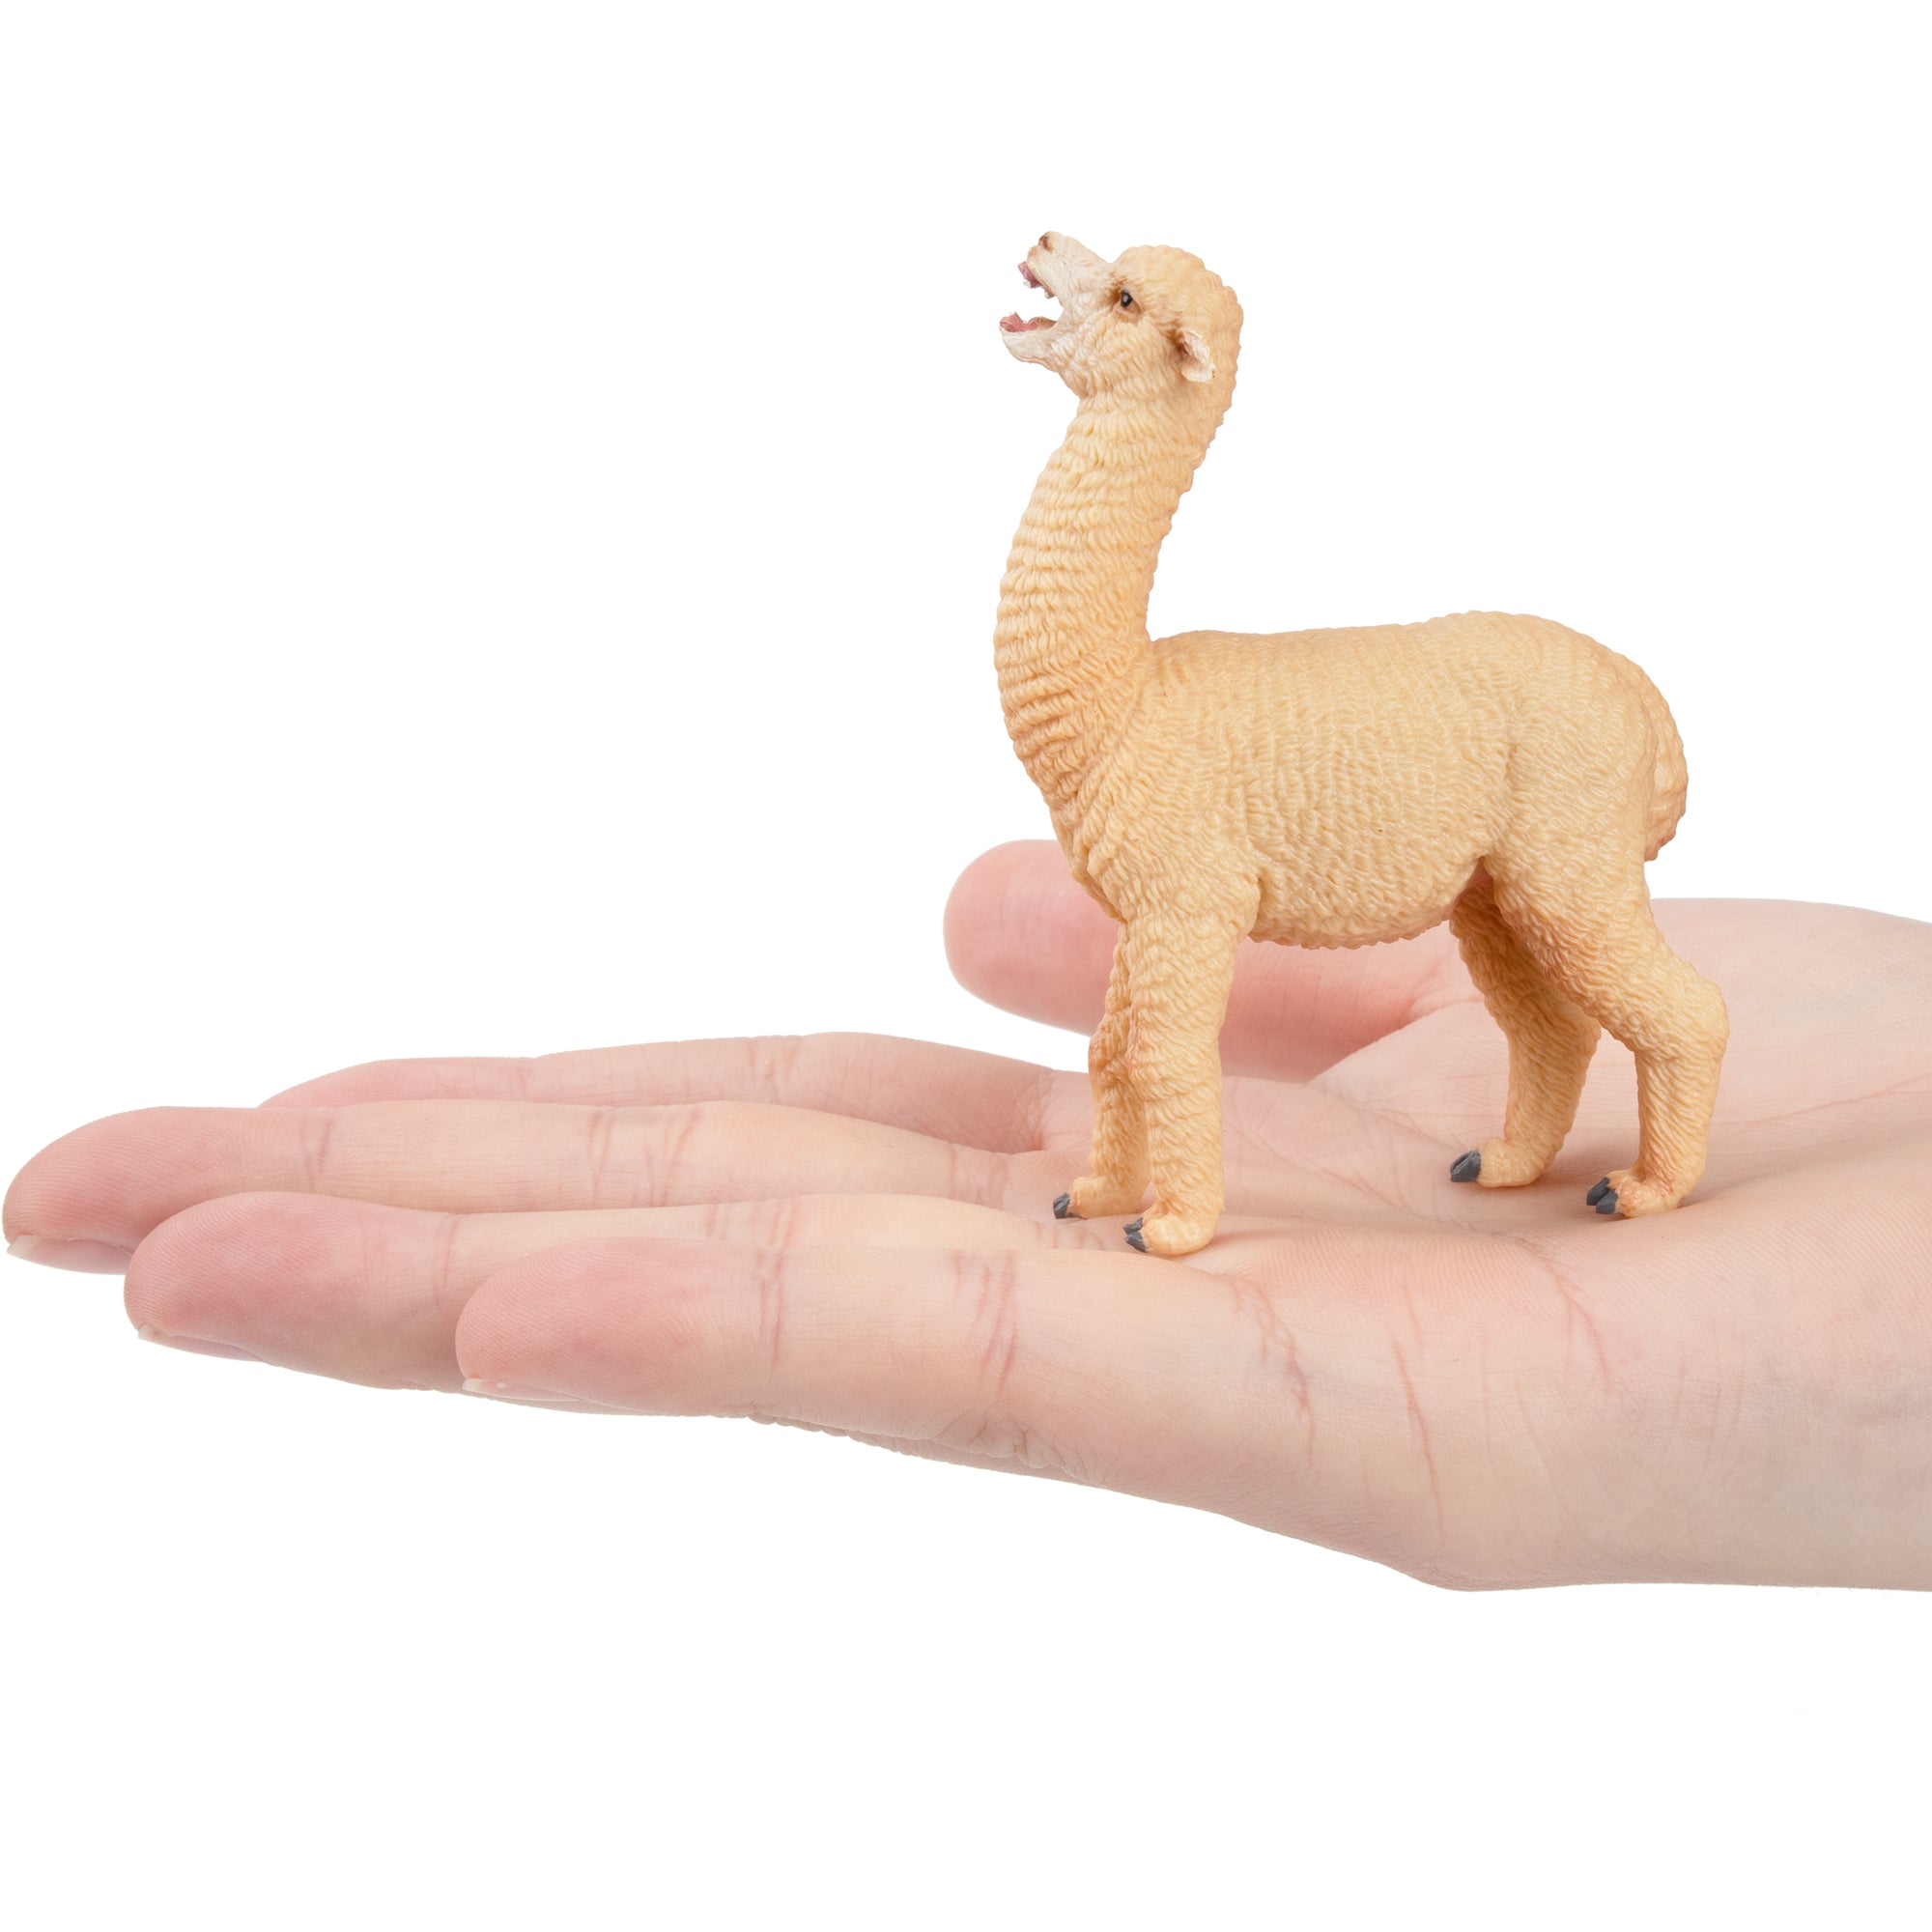 Toymany Female Alpaca Figurine Toy-on hand